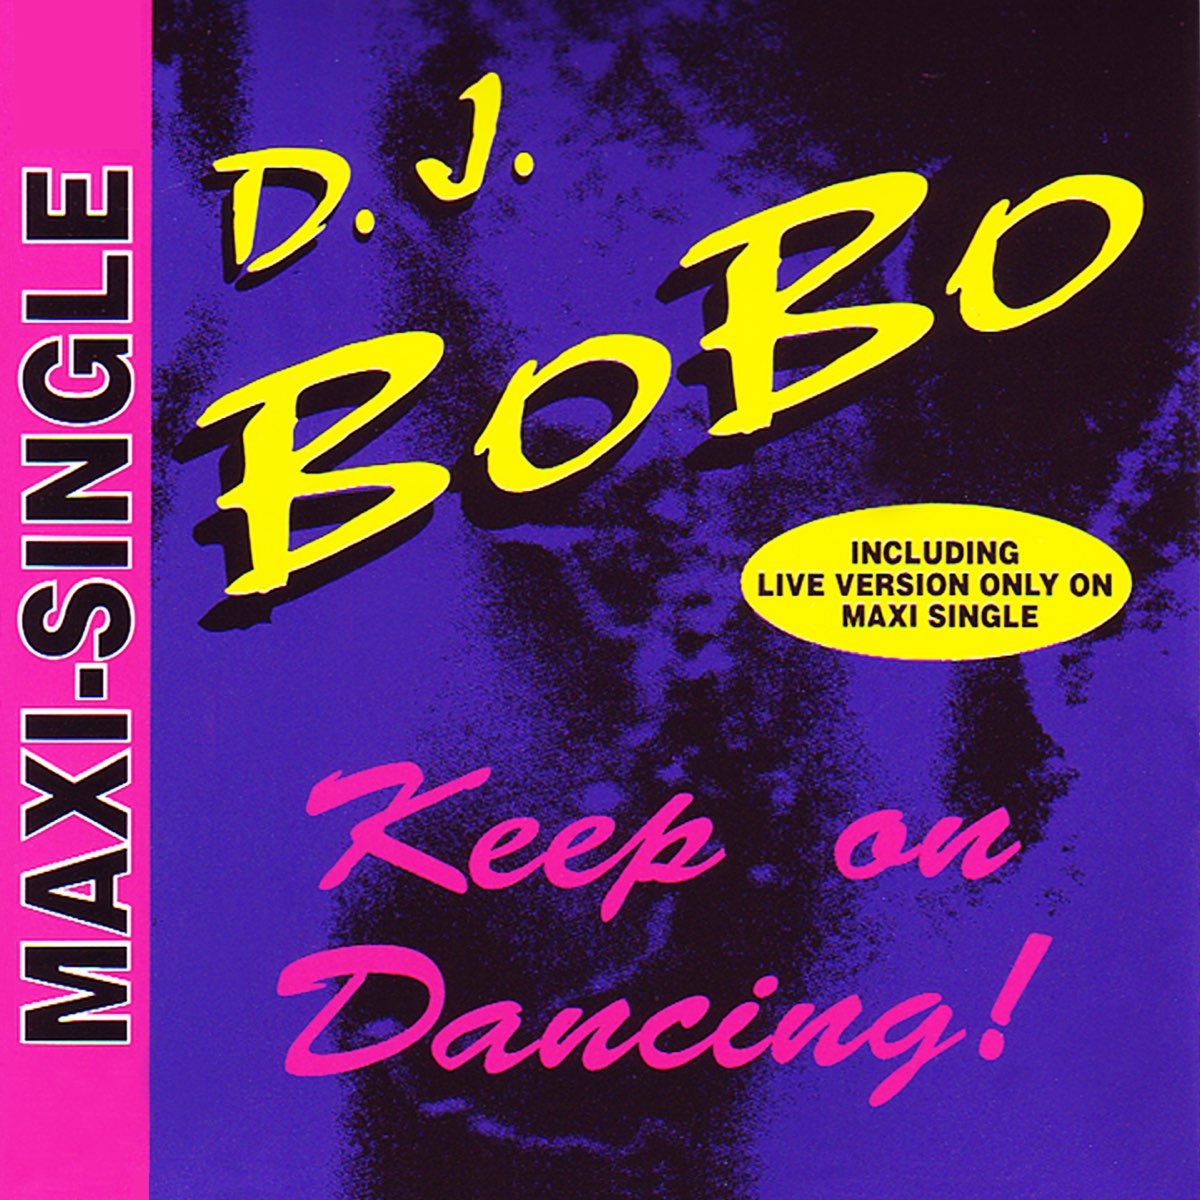 Dj bobo dancing. DJ Bobo. Keep on Dancing. DJ Bobo Dance with me 1993. DJ Bobo keep on Dancing Remix.